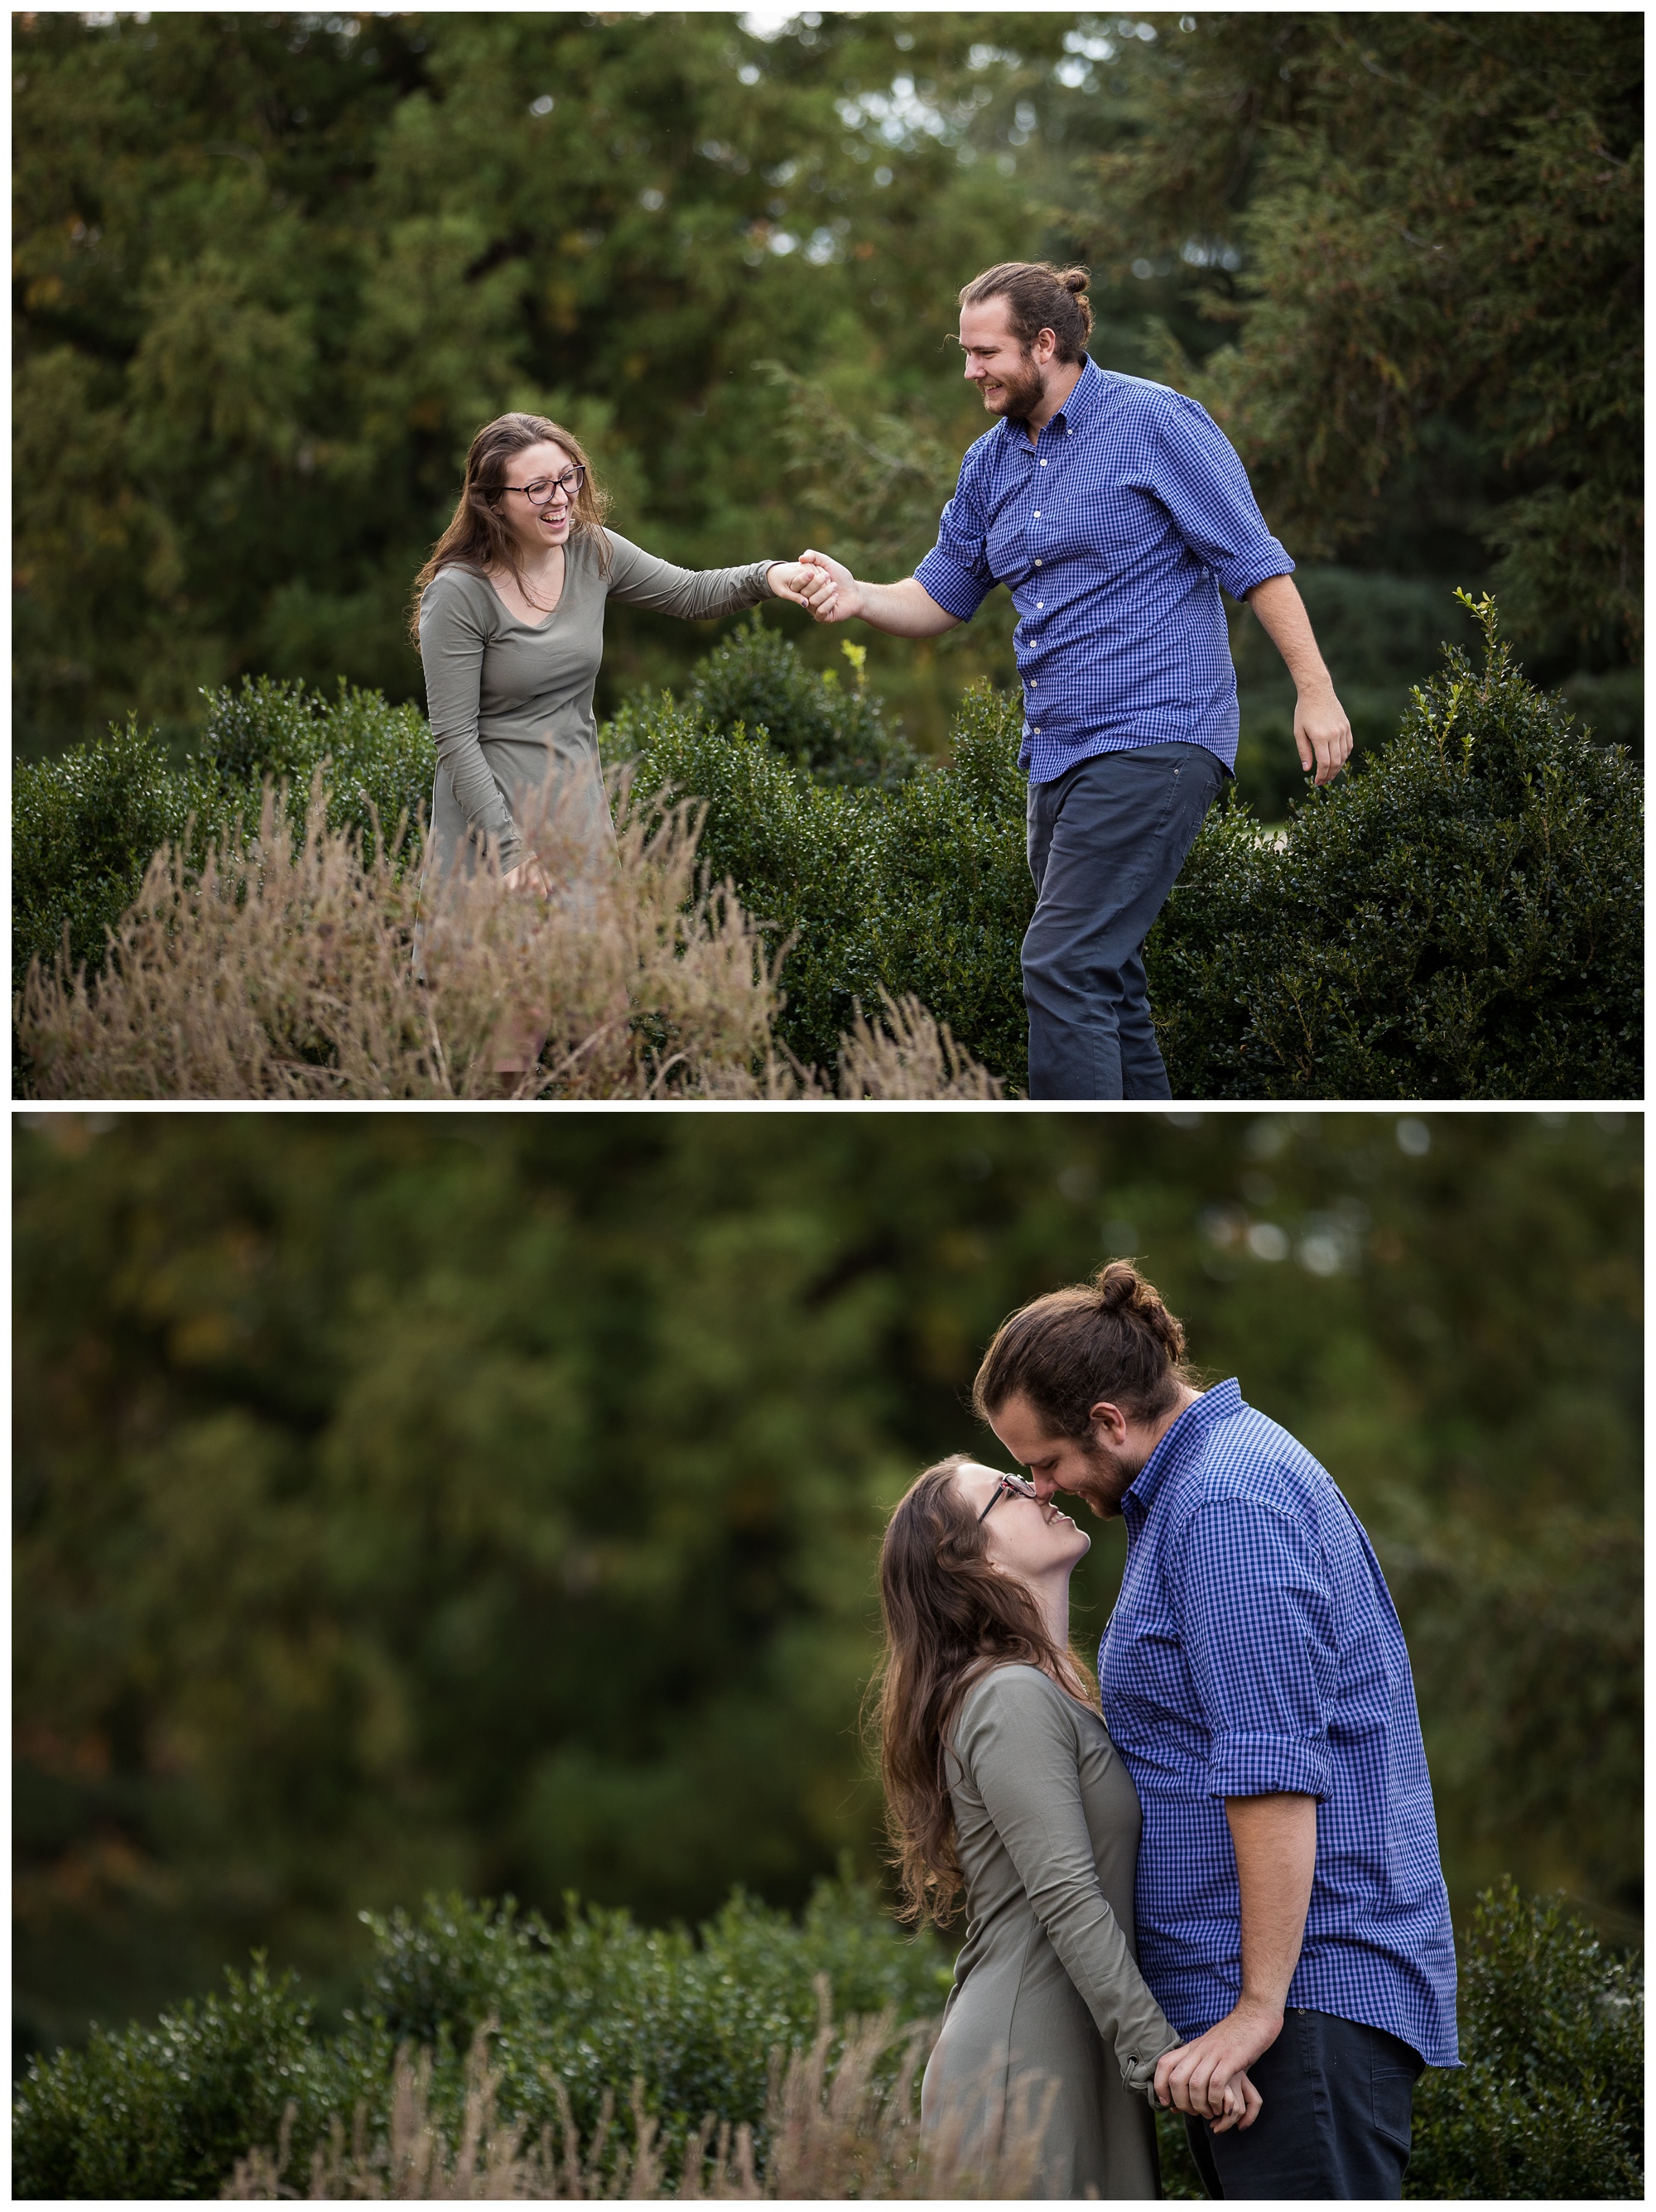 Jenna & Ethan | Maymont Park Engagement Session